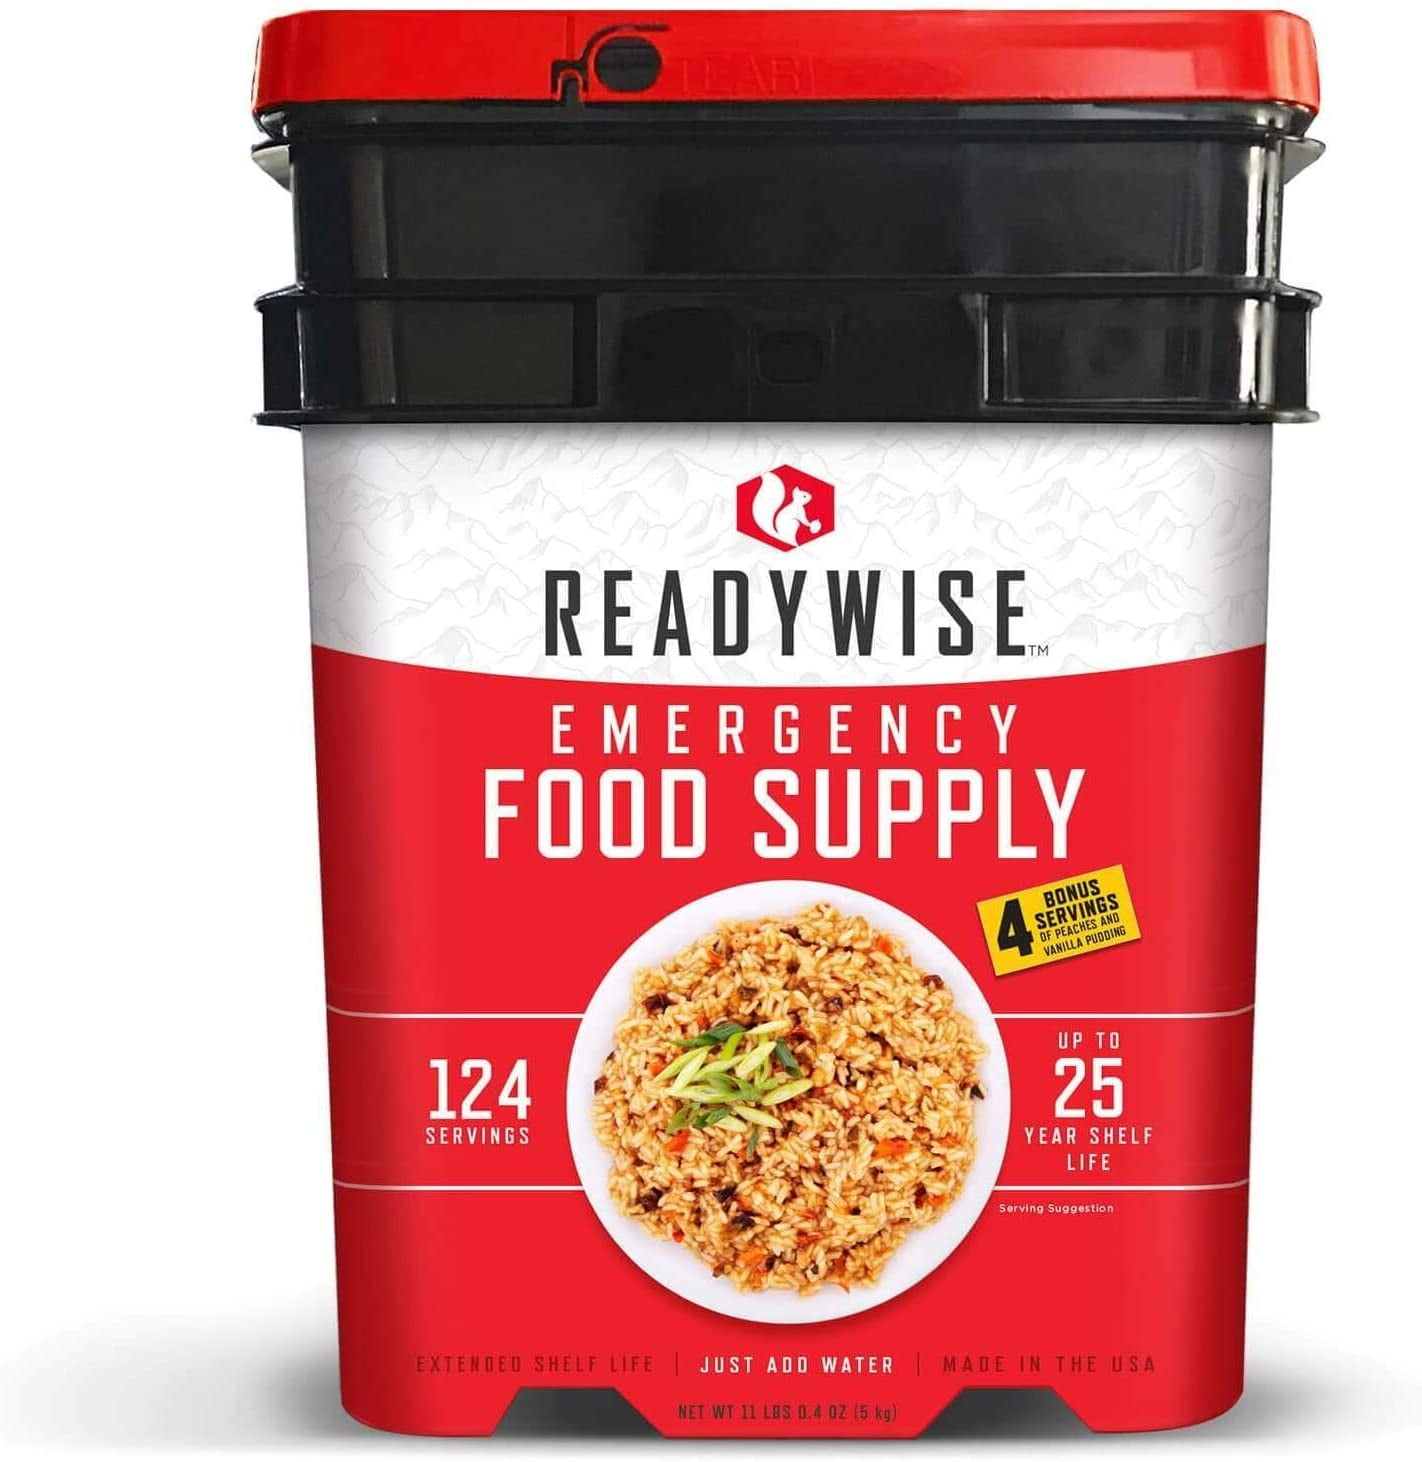 2 week emergency food supply - 72-Hour 4-Person Emergency Food Supply Kit